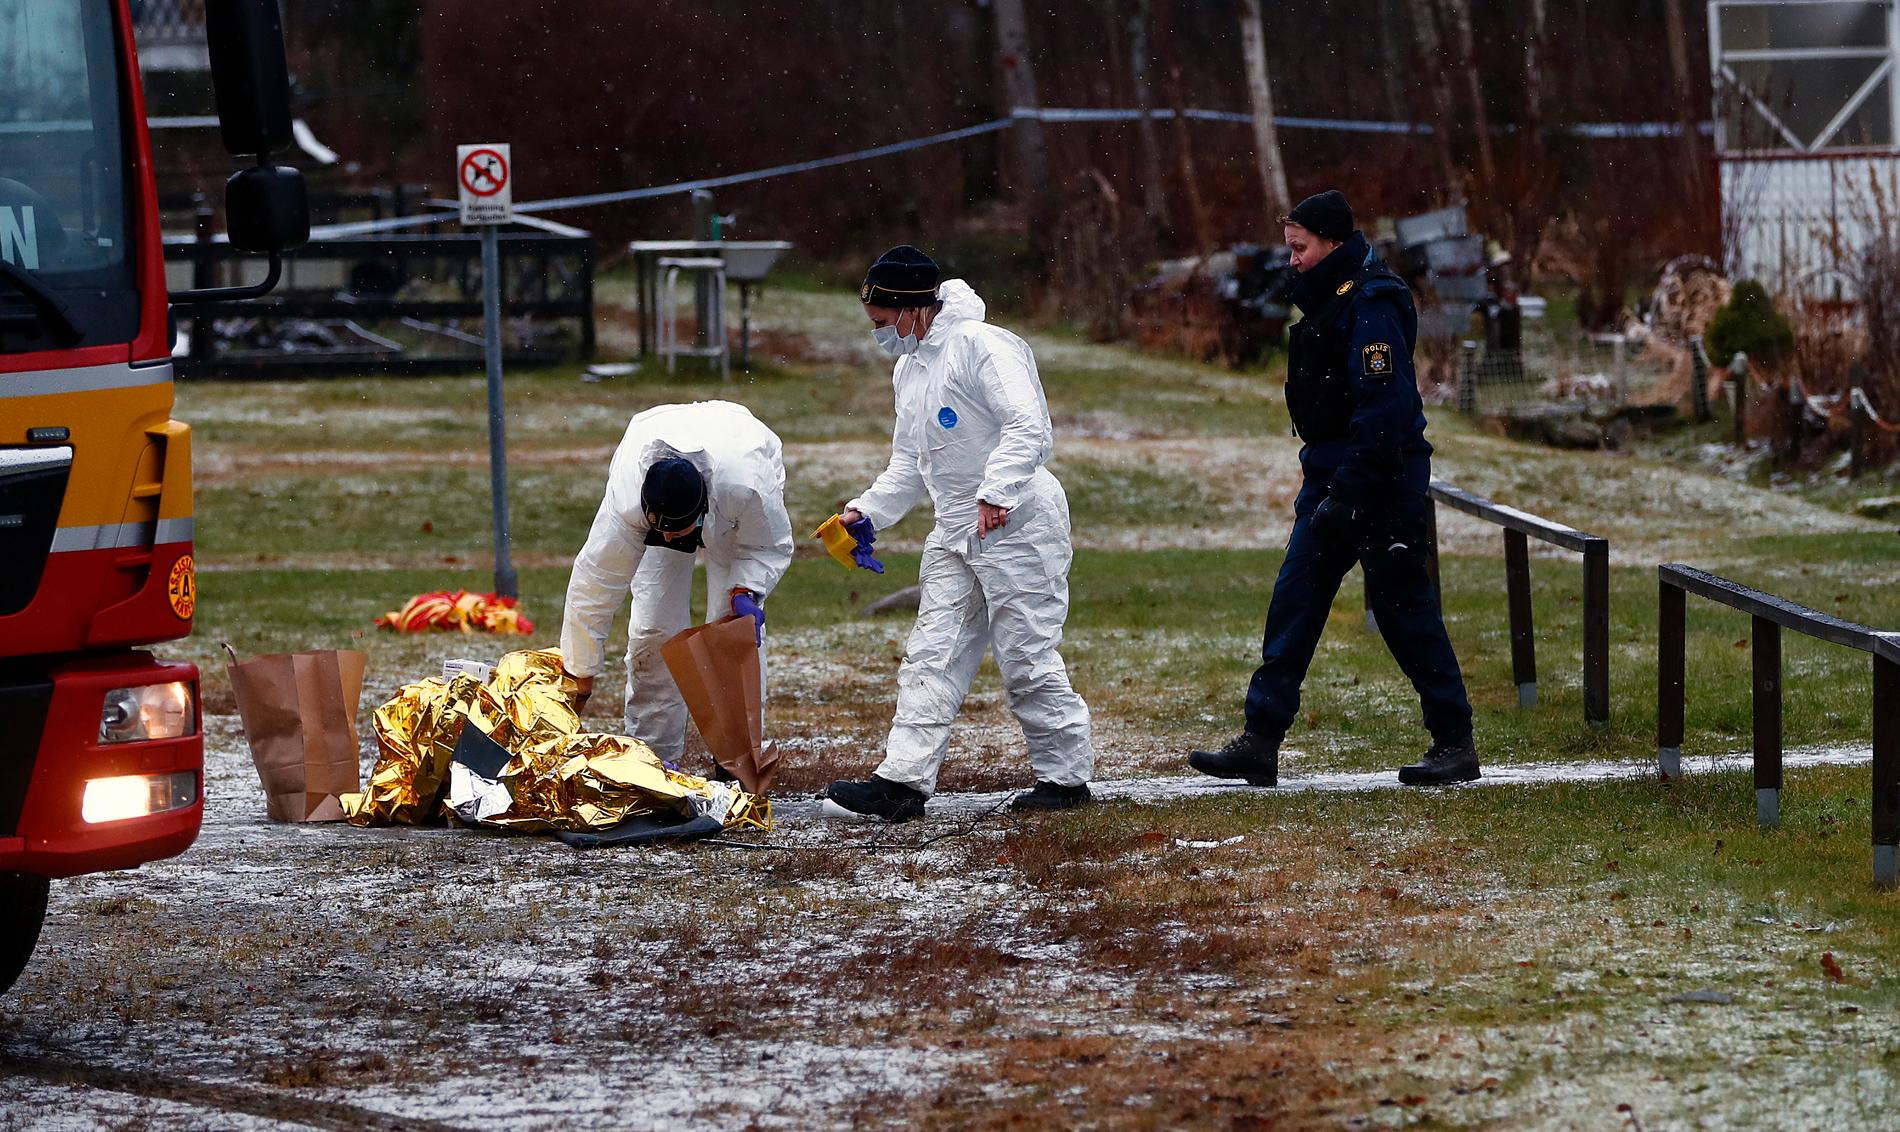 En man hittades död utomhus i Kvibergsområdet i Göteborg med skottskador på kroppen. Nu tror man att en sexfälla kan ha lockat honom dit.